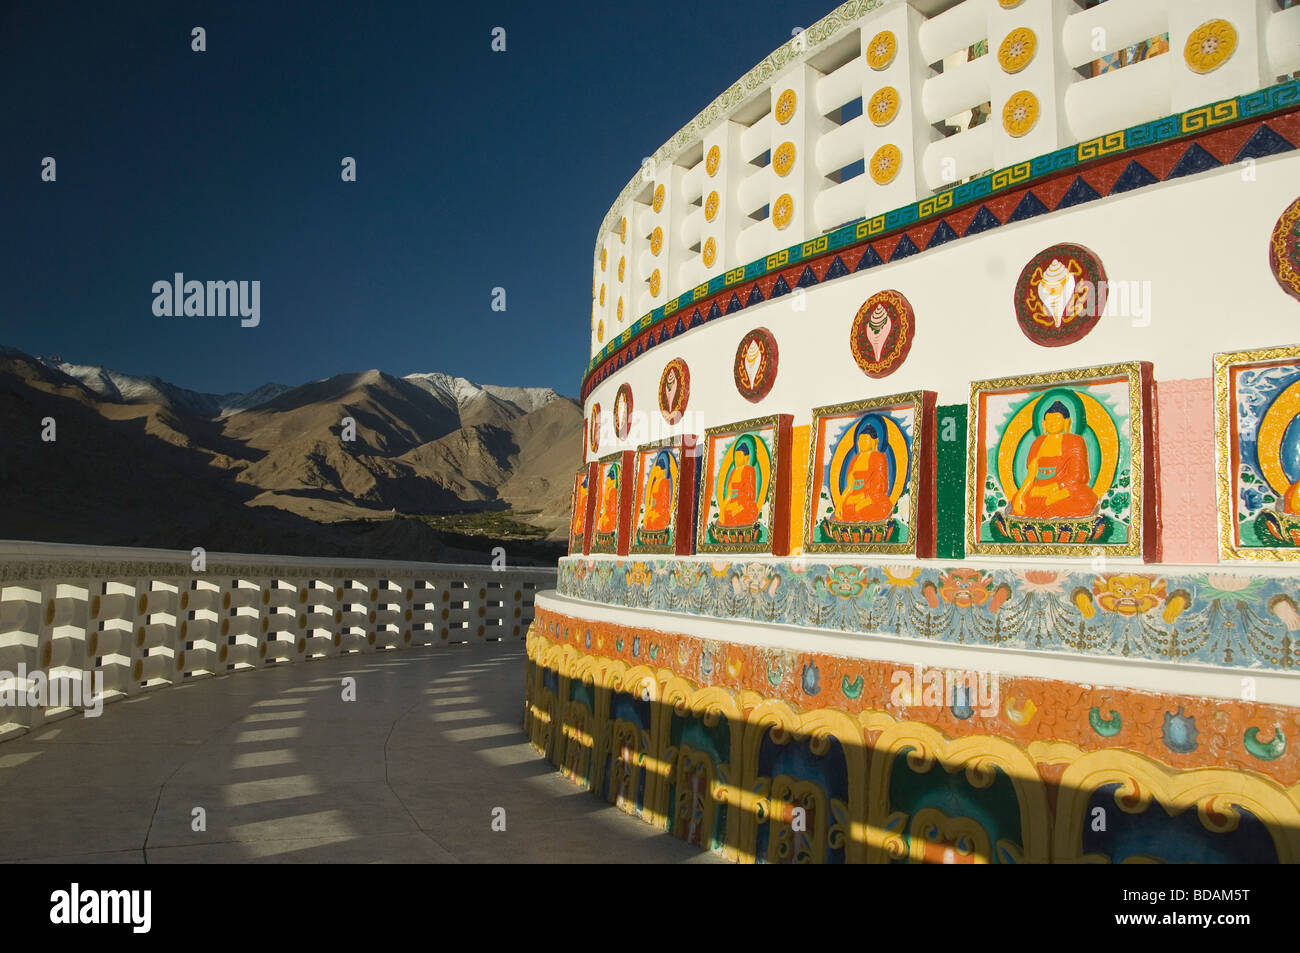 Buddha paintings on the wall of a stupa, Shanti Stupa, Leh, Ladakh, Jammu and Kashmir, India Stock Photo